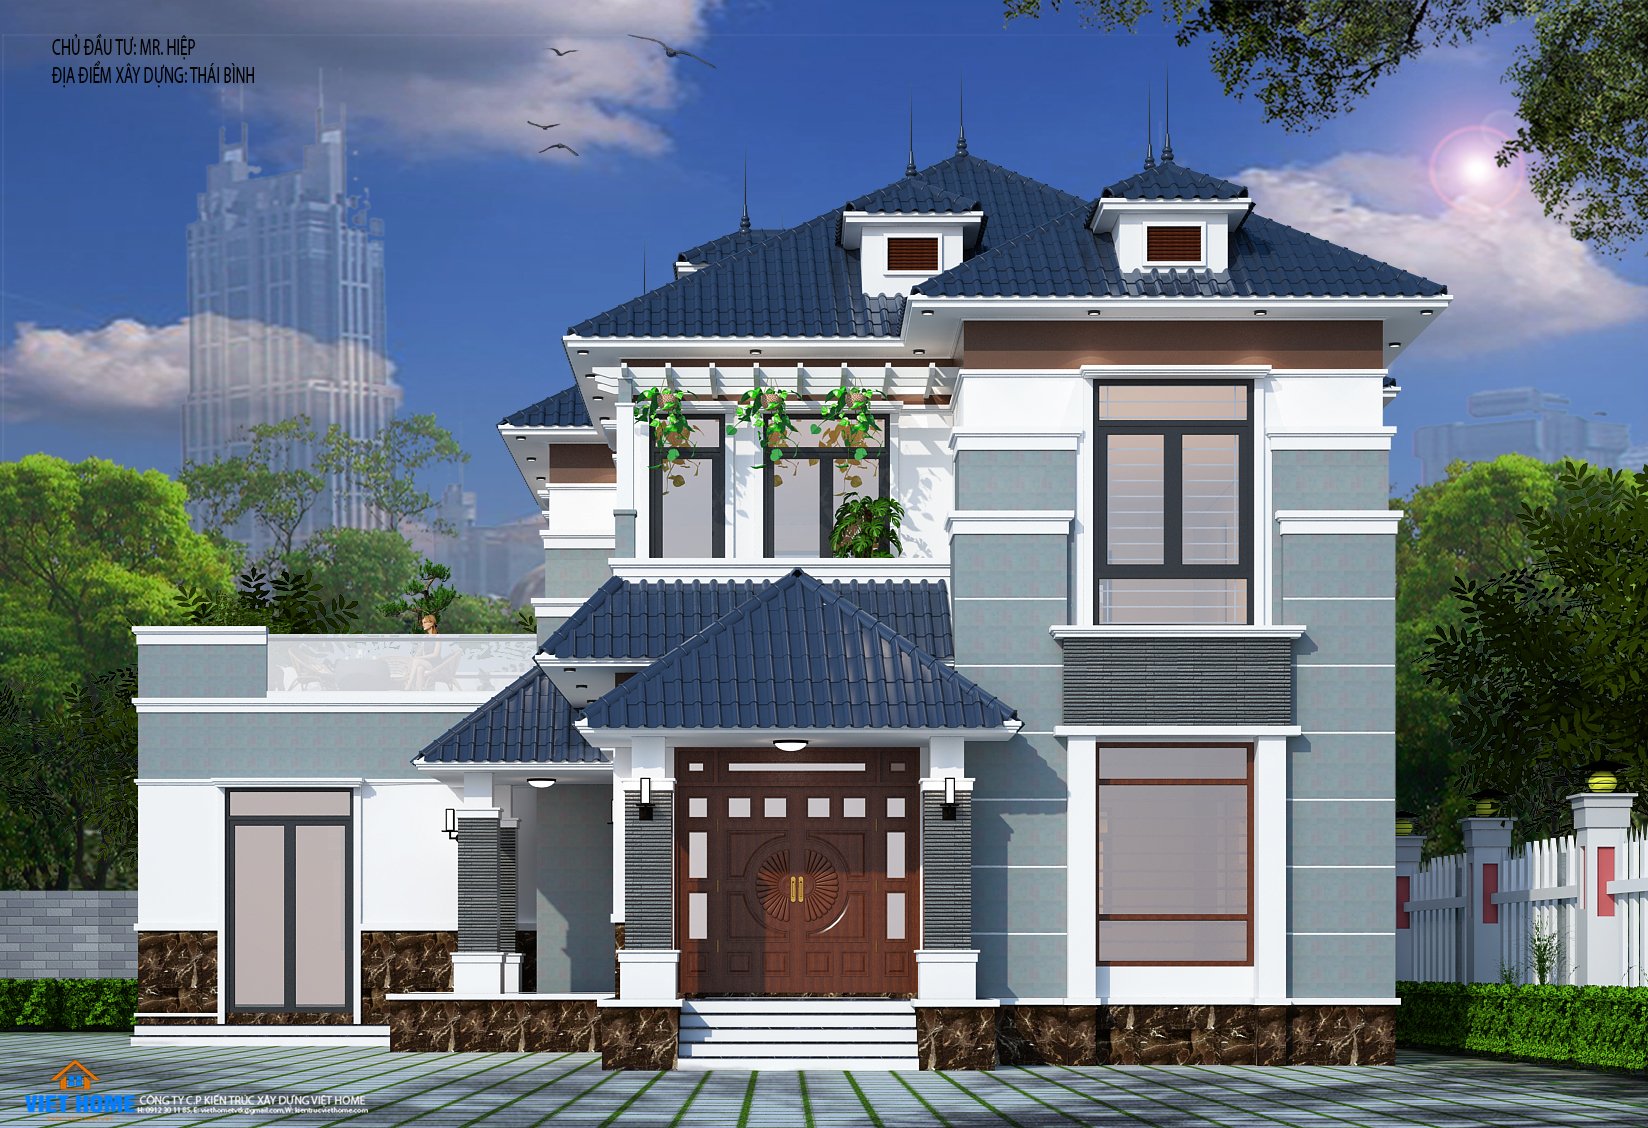 Mẫu thiết kế nhà mái nhật 2 tầng đẹp tại Thái Bình - Chủ đầu tư ...